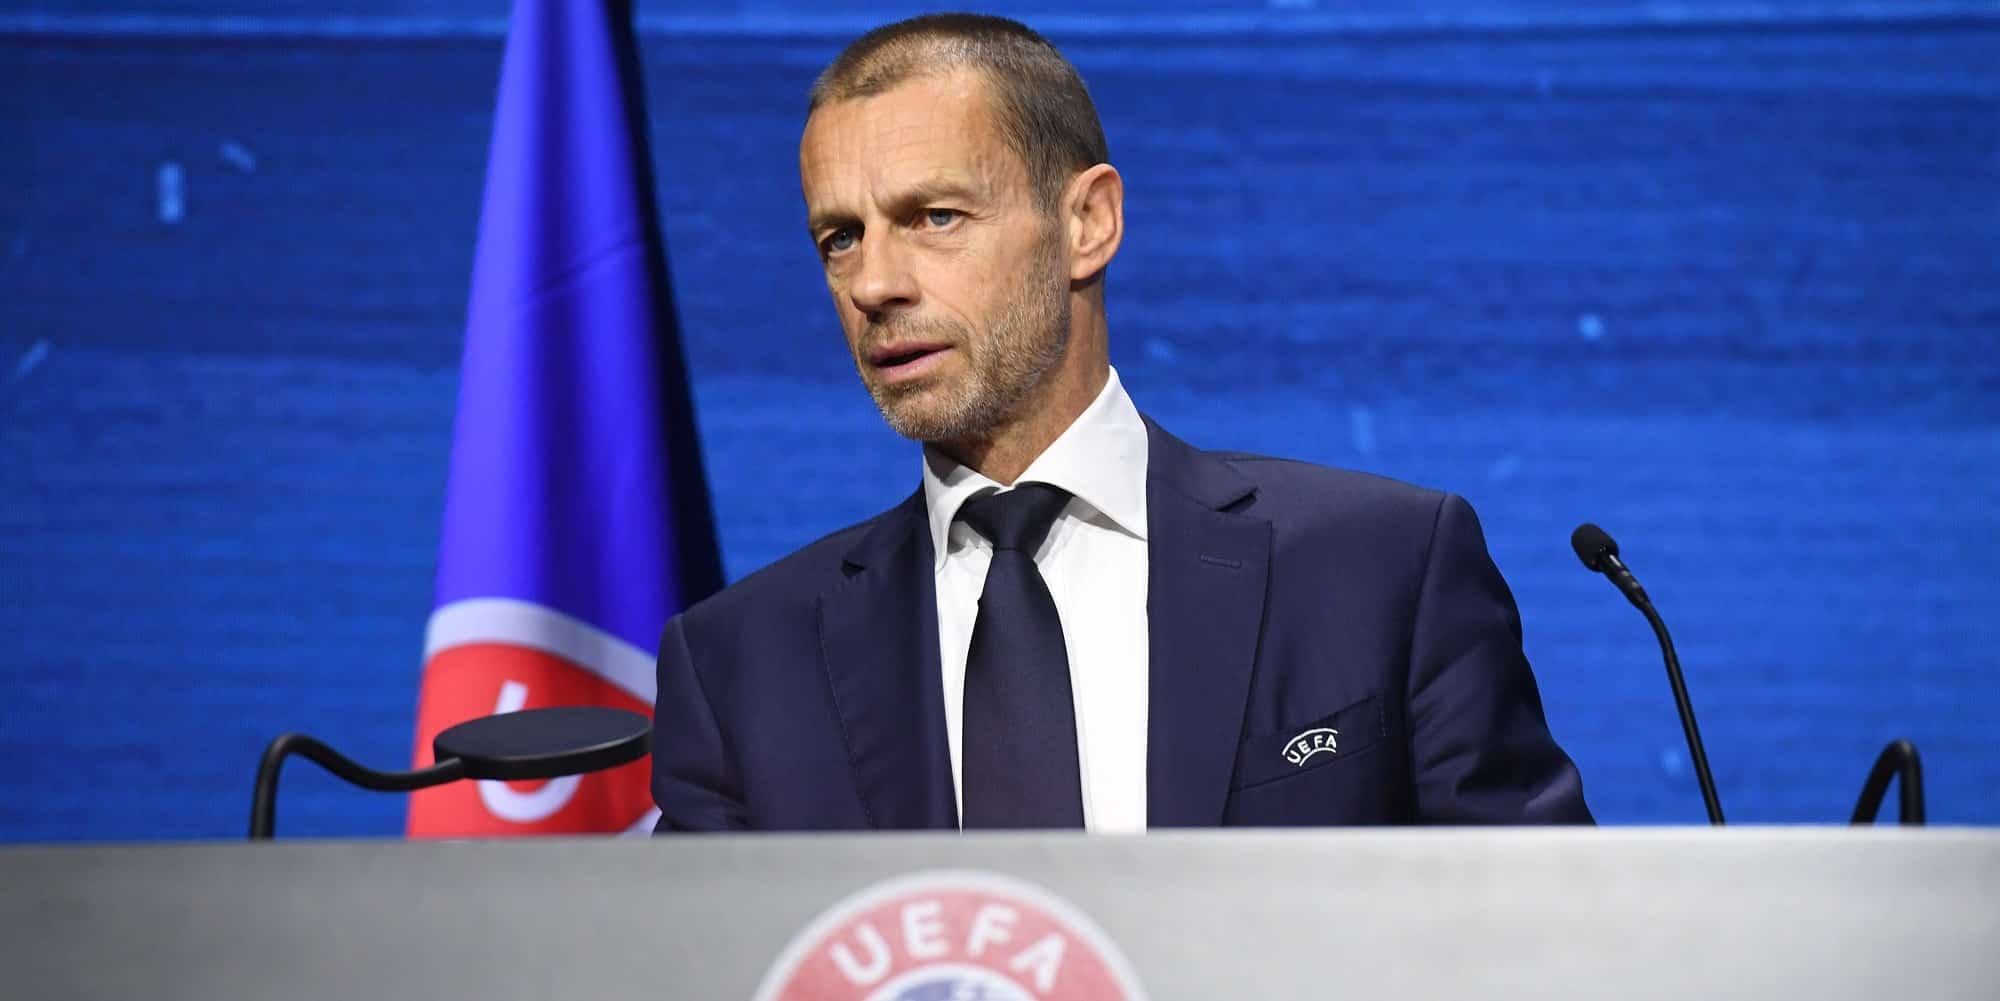 Παραμένει στην προεδρία της UEFA ο Αλεξάντερ Τσέφεριν